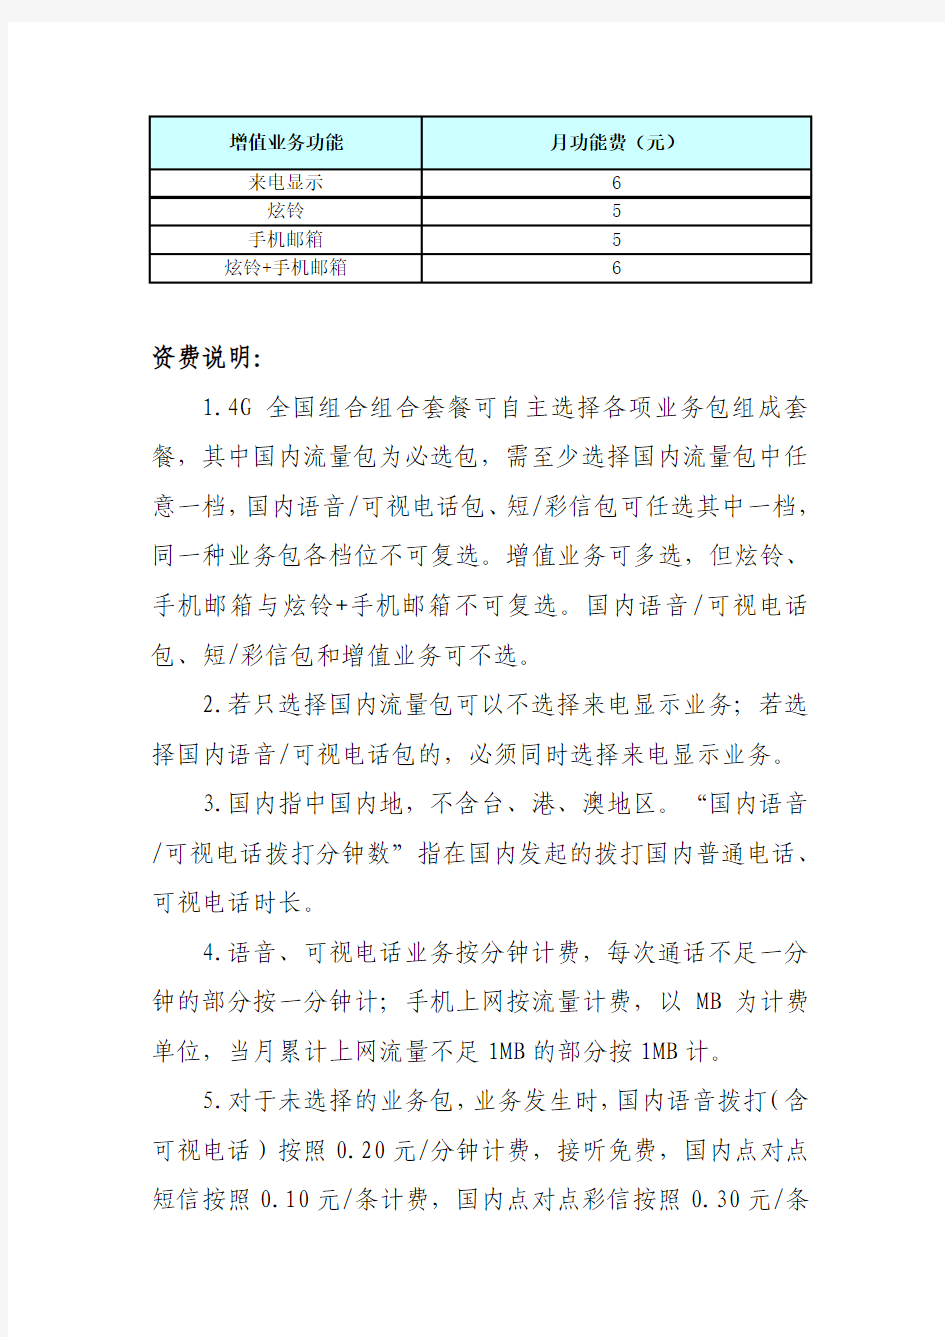 中国联通4G全国组合套餐资费标准